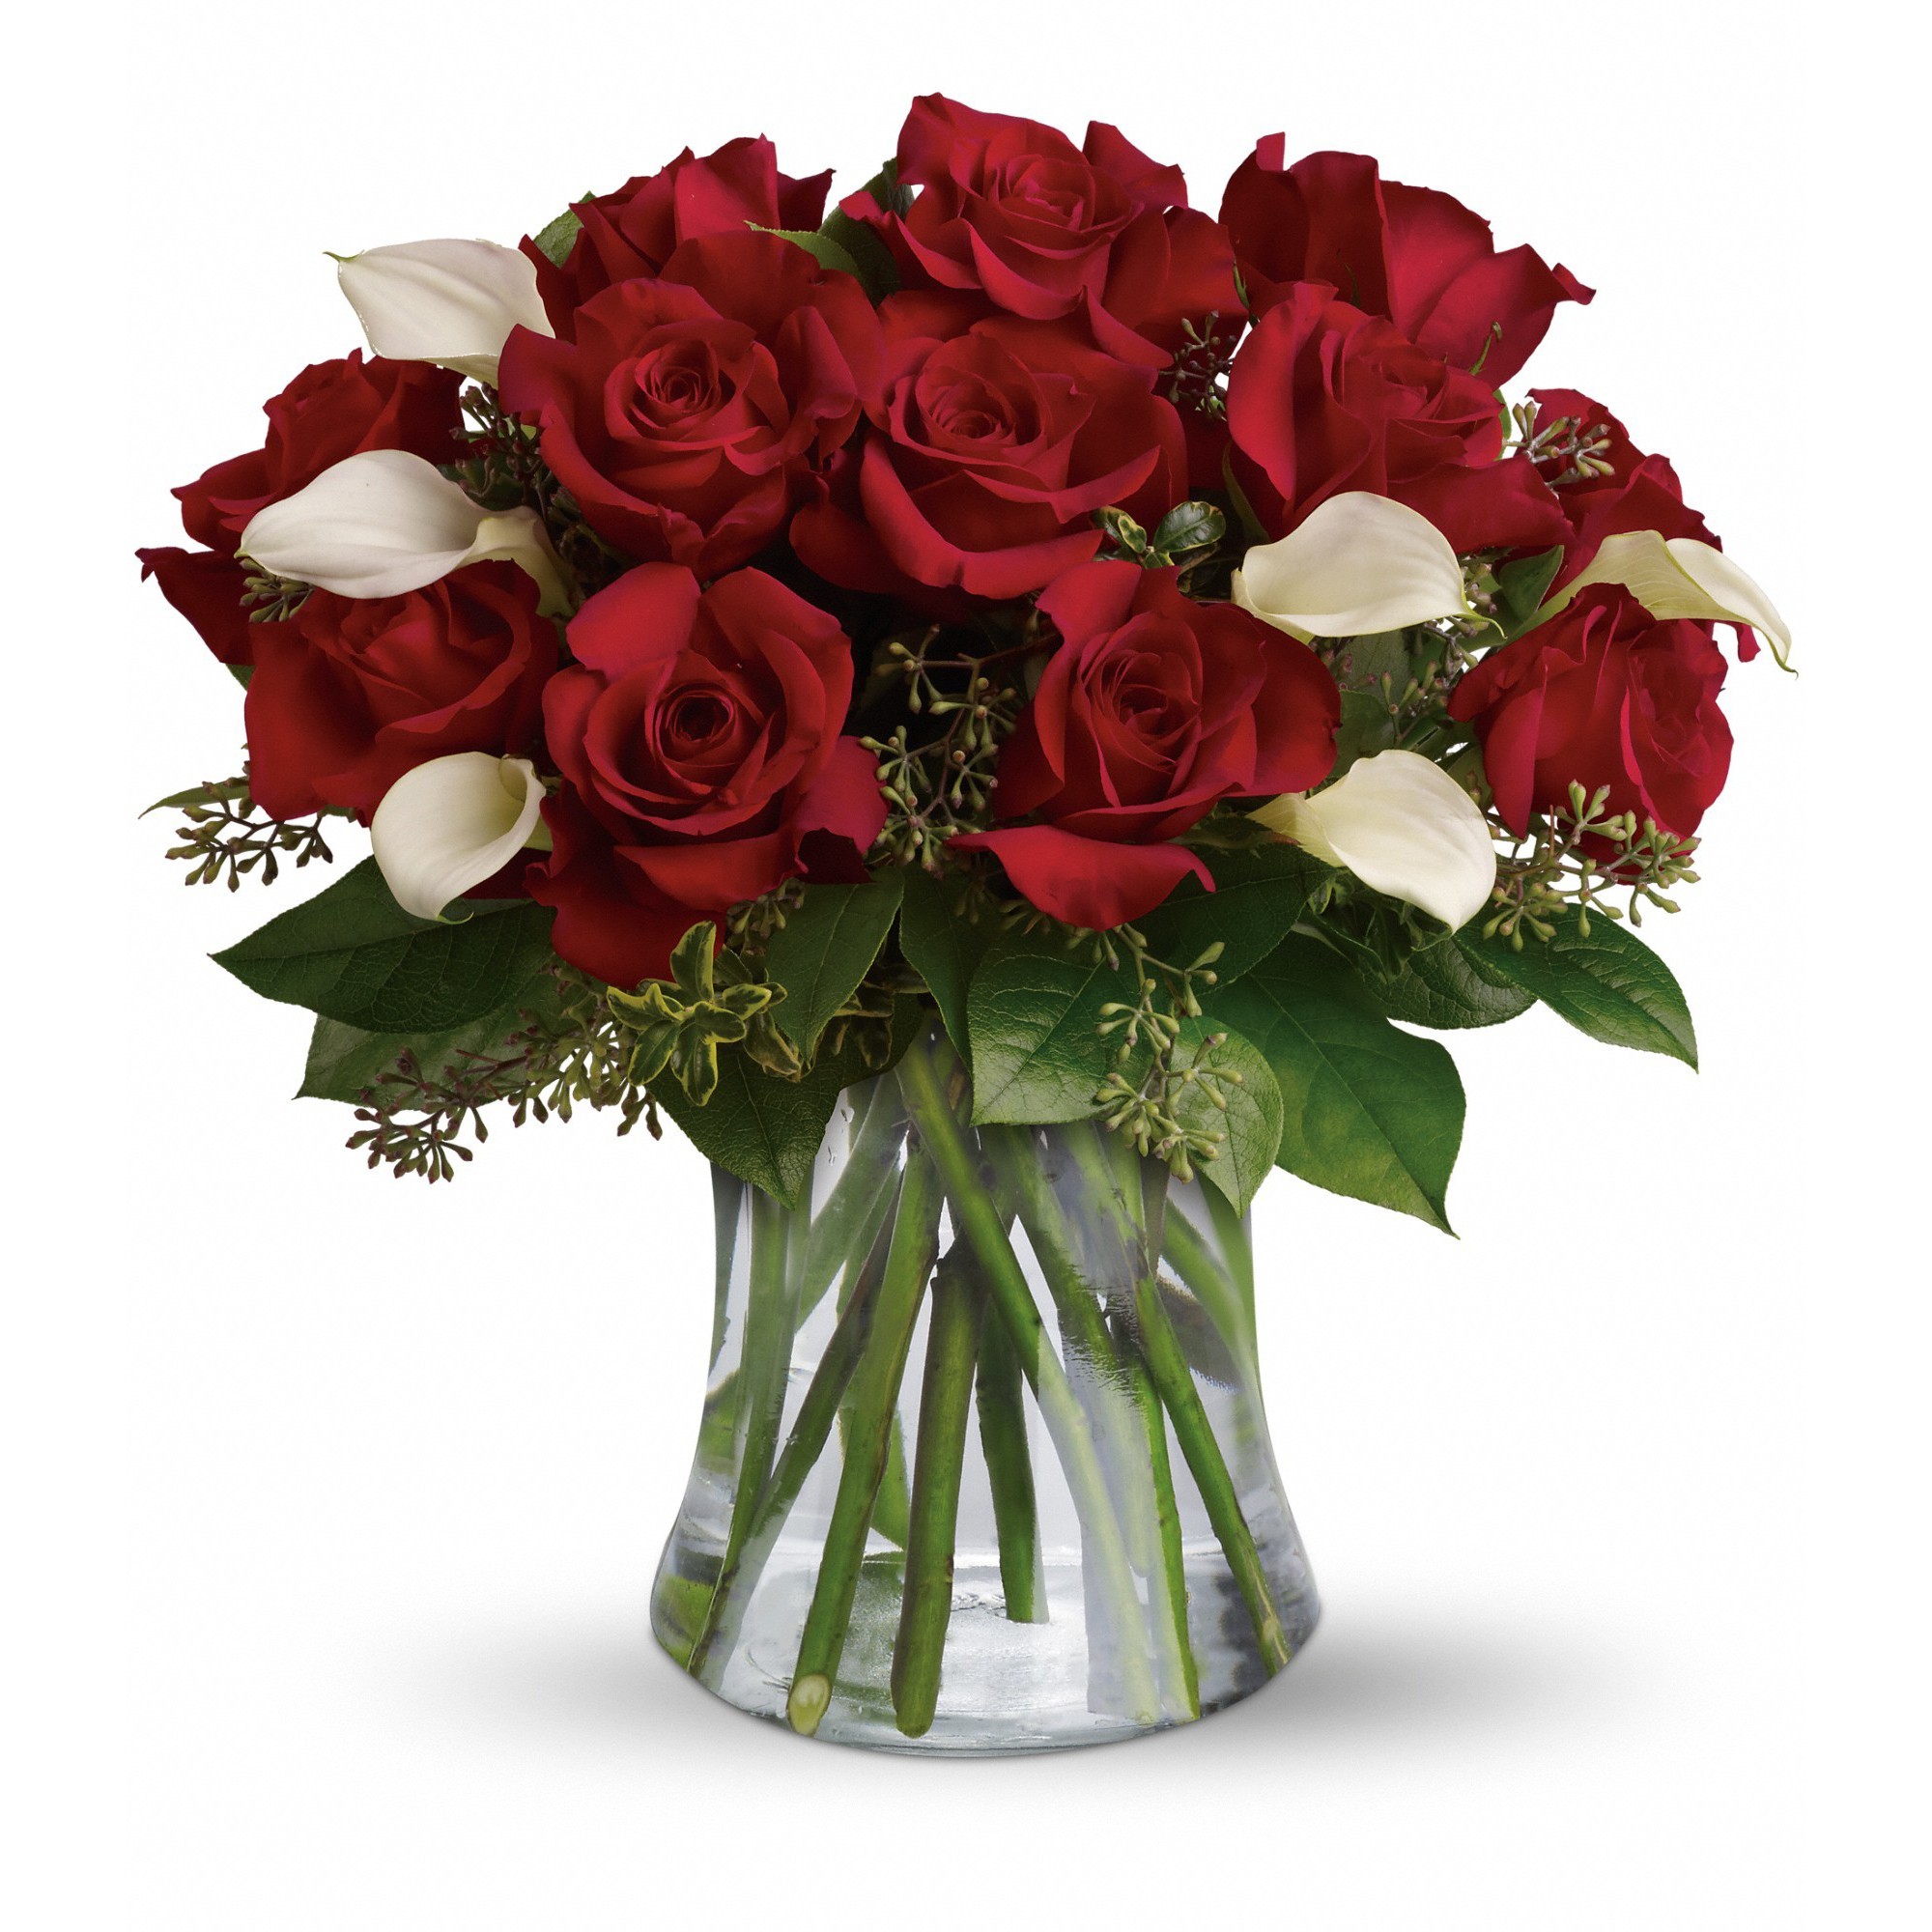 Be Still My Heart - Dozen Red Roses in Fullerton, CA | Flower Allie